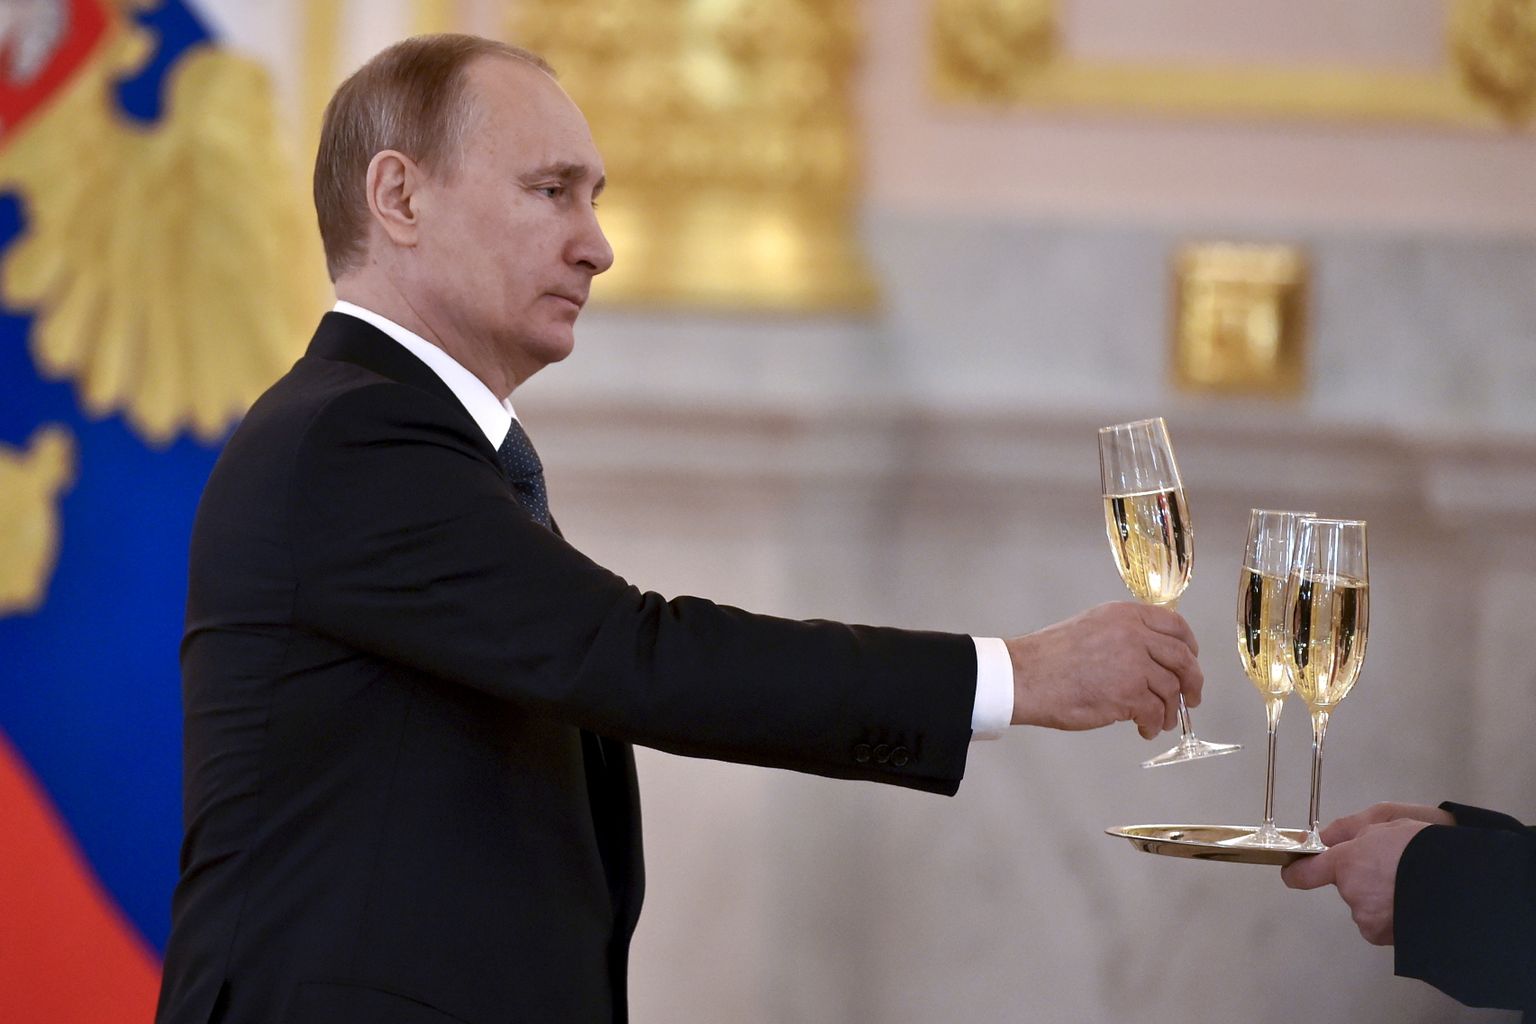 Venemaa president Vladimir Putin võtmas 20. aprillil 2016 Kremlis šampanjaklaasi pärast välisriikide suursaadikute volikirjade vastuvõtmist